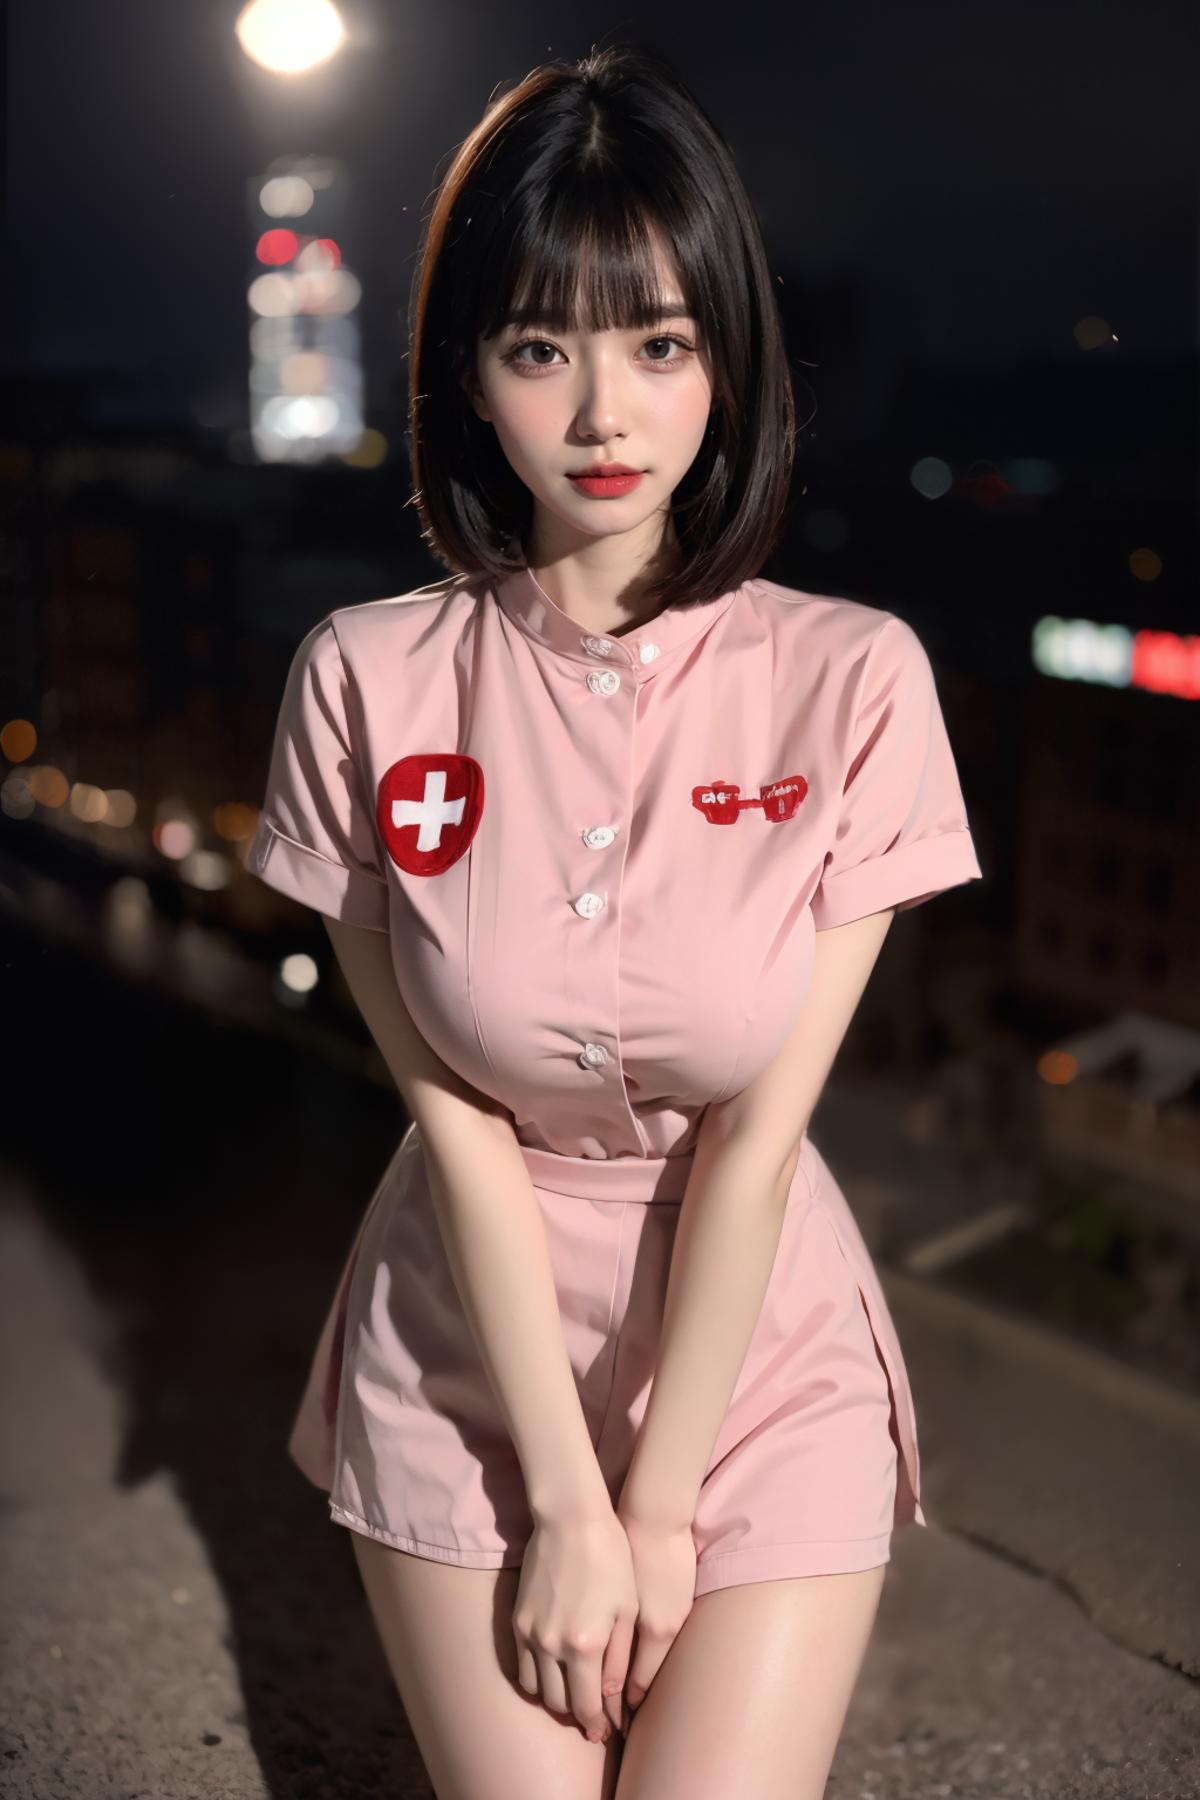 明月的服装  粉色性感护士服| Pink sexy nurse gown image by CMMY